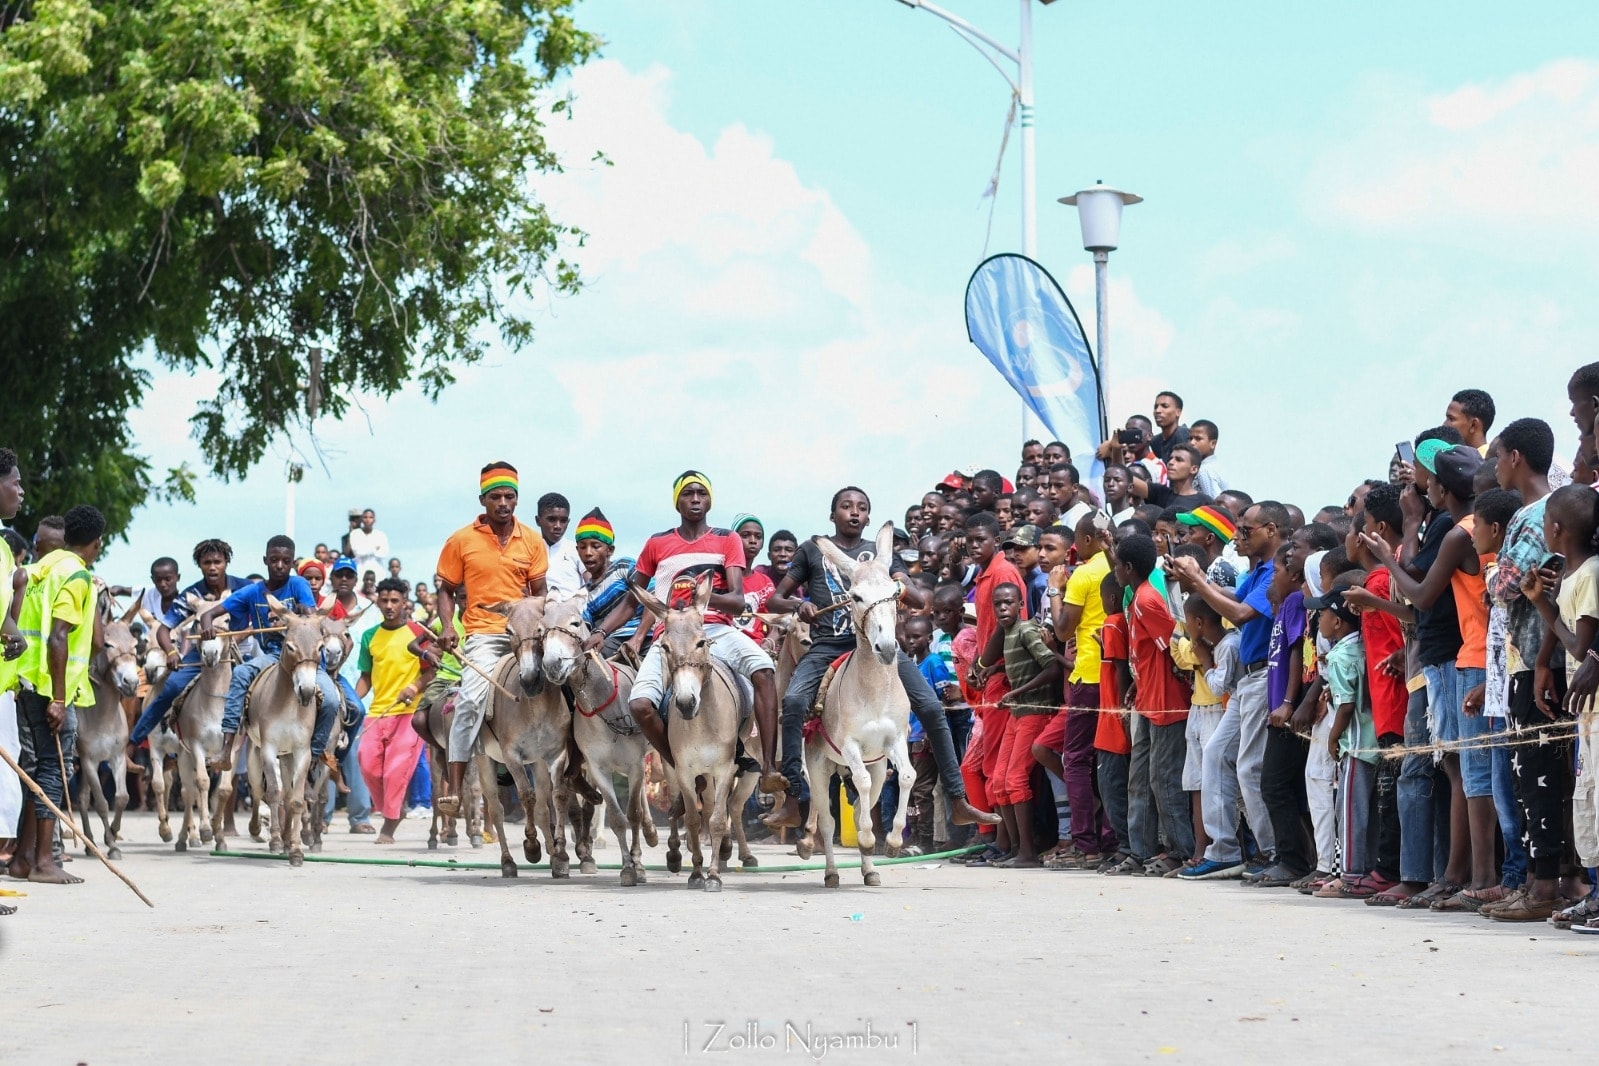 Lamu Donkey Race Celebrating Tradition and Community in Kenya